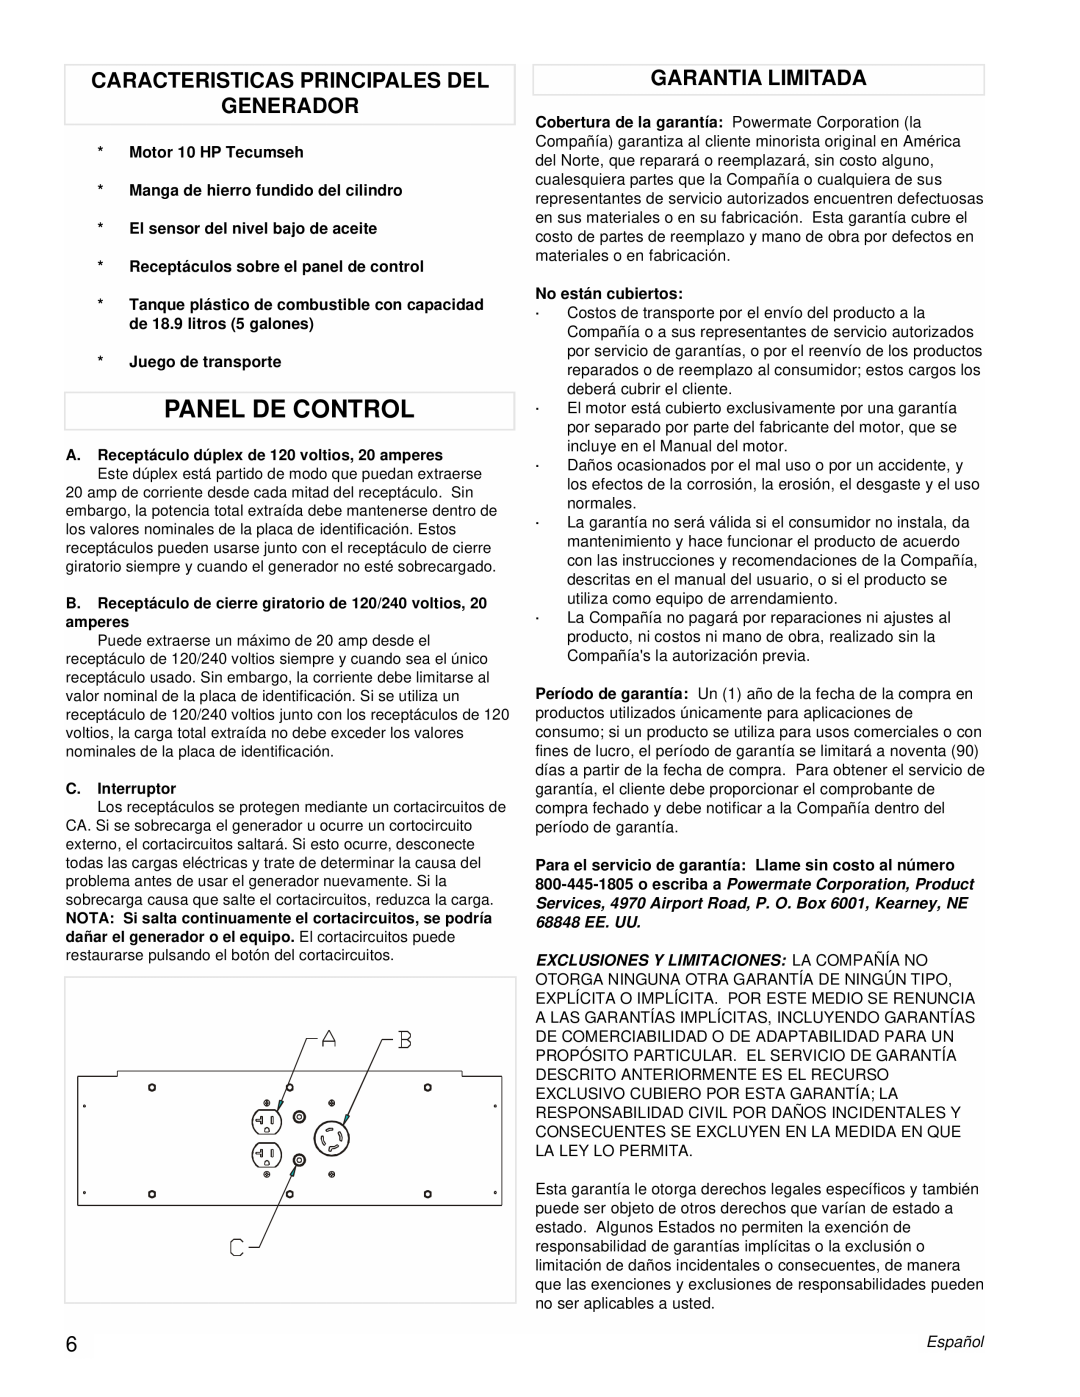 Powermate PM0525303.03 manual Panel De Control, Caracteristicas Principales Del Generador, Garantia Limitada 